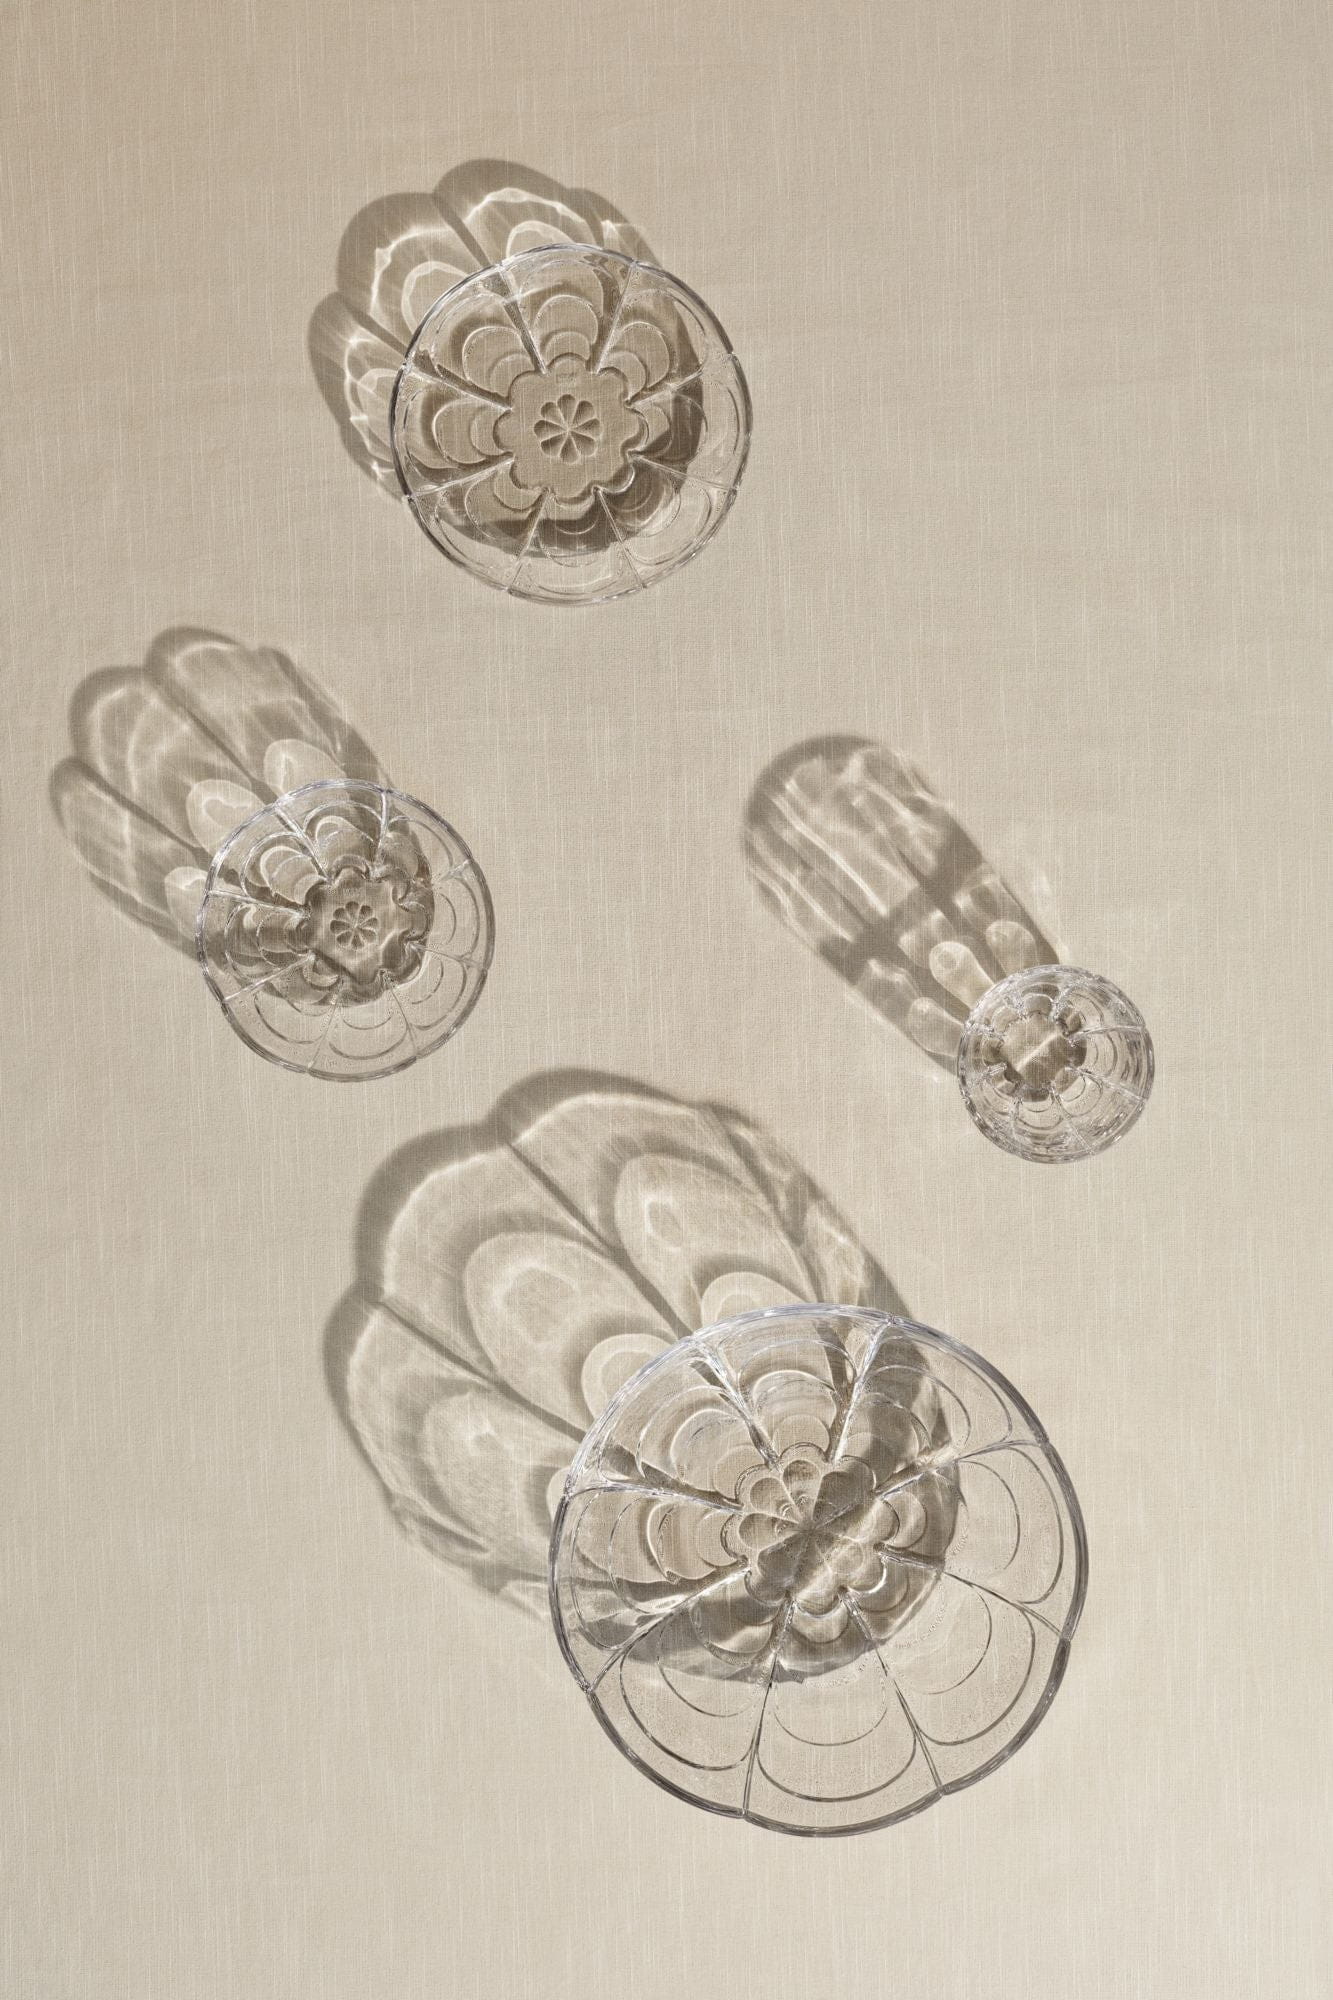 Holmegaard Lily Small eggjaplötur sett af 2 Ø16 cm, tær